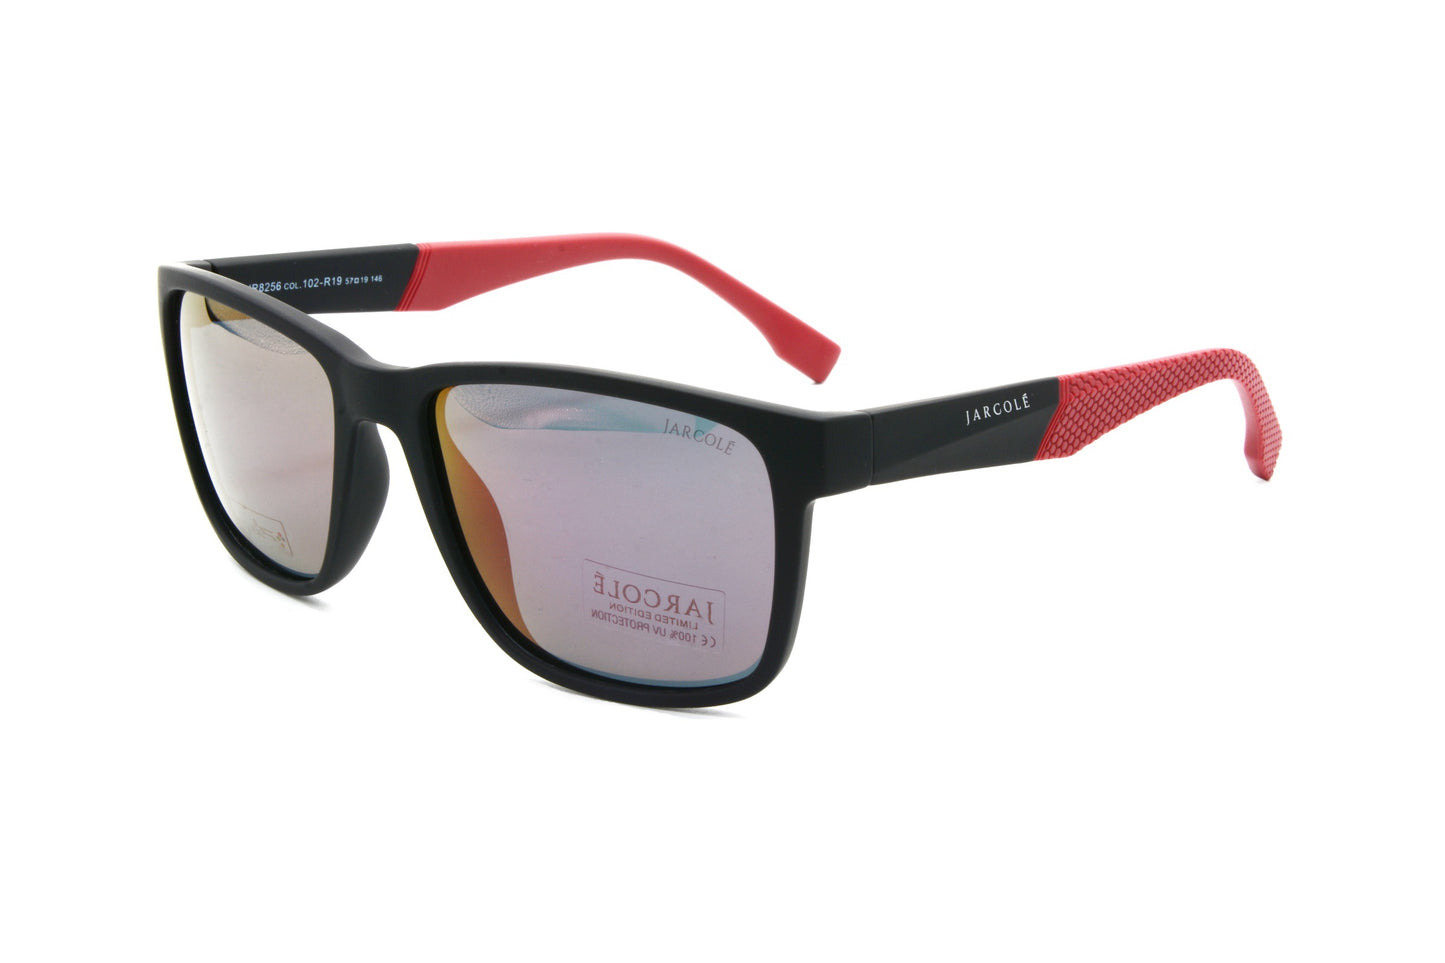 Jarcole sunglasses JR8256 102-R19